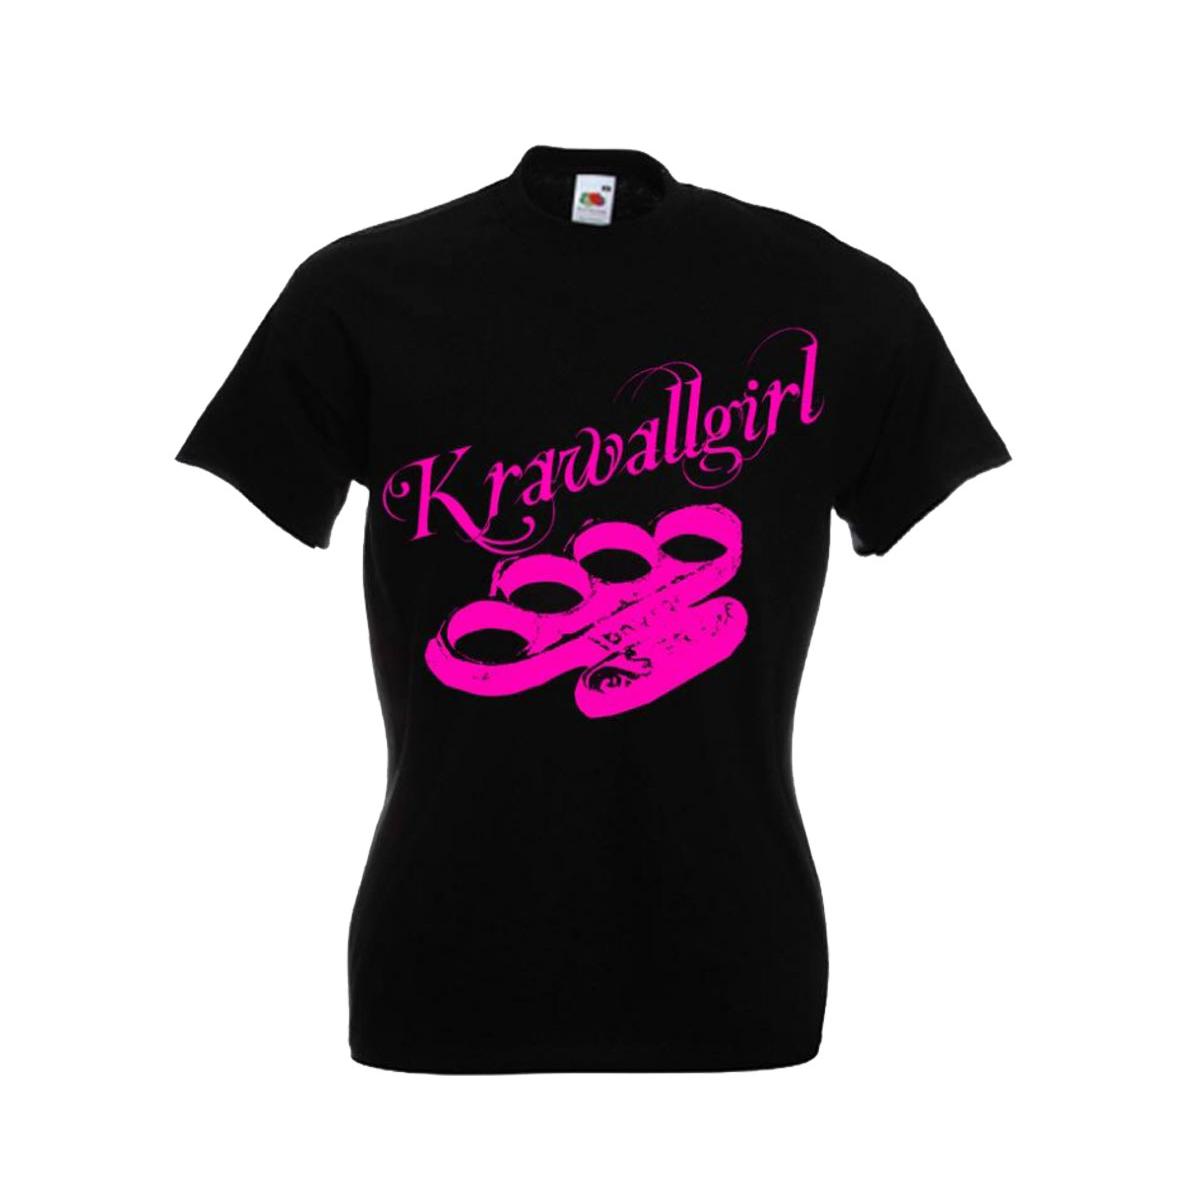 Krawallgirl - Schlagring - Frauen T-Shirt - schwarz-pink